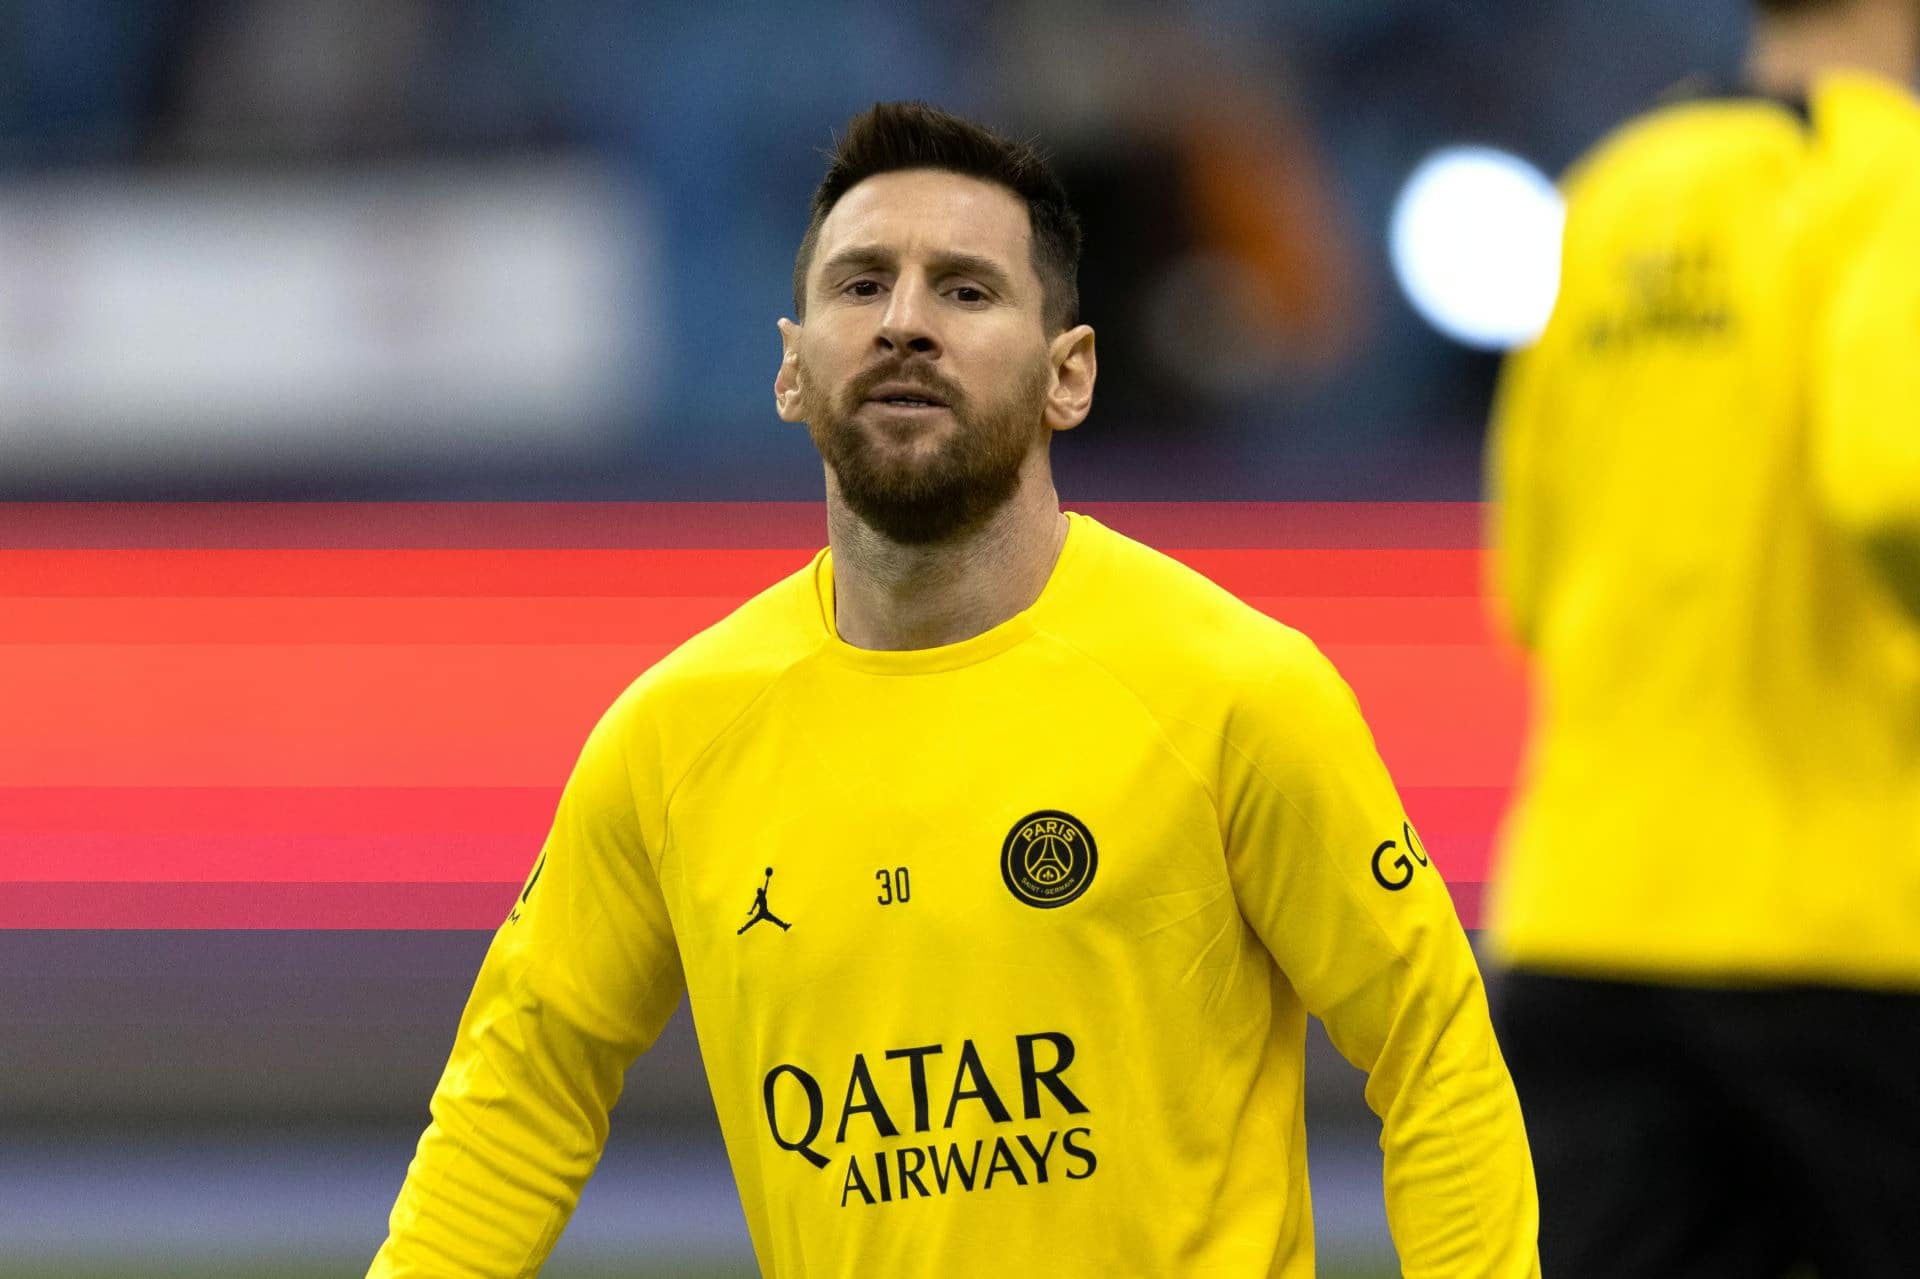 La prolongation de contrat imminente de la superstar du FC Barcelone pourrait ouvrir la voie au retour de Messi